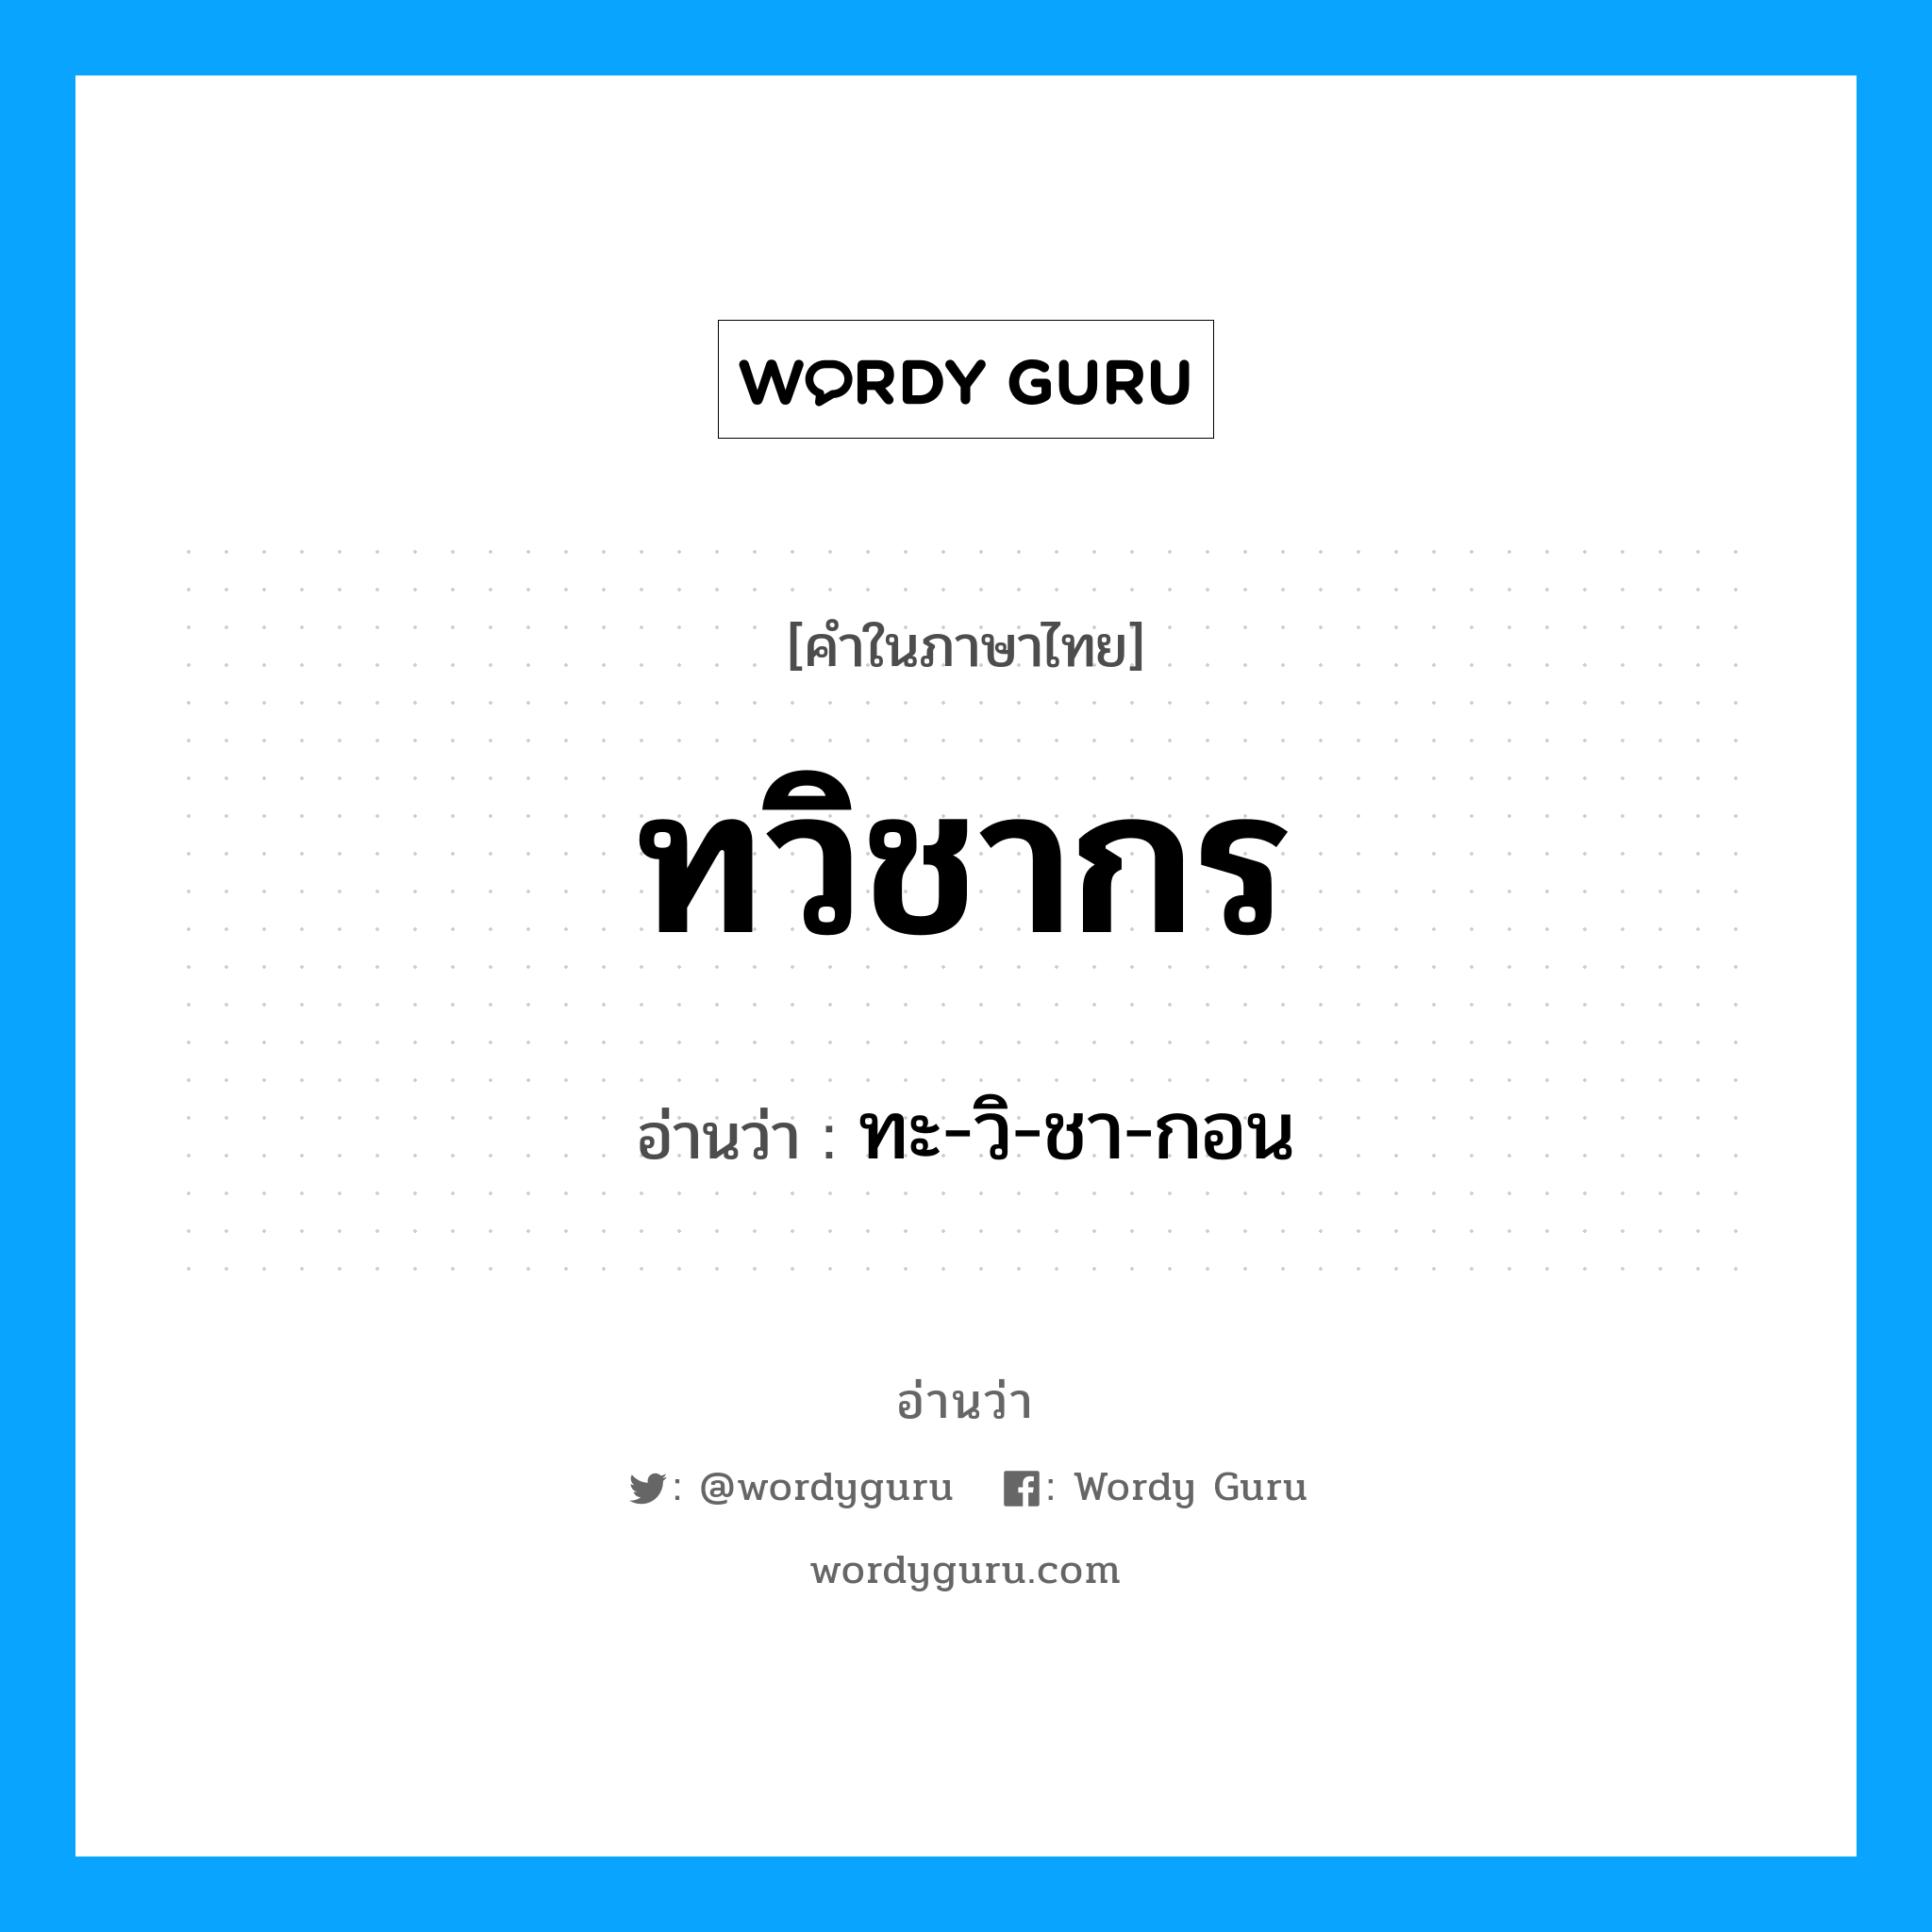 ทะ-วิ-ชา-กอน เป็นคำอ่านของคำไหน?, คำในภาษาไทย ทะ-วิ-ชา-กอน อ่านว่า ทวิชากร